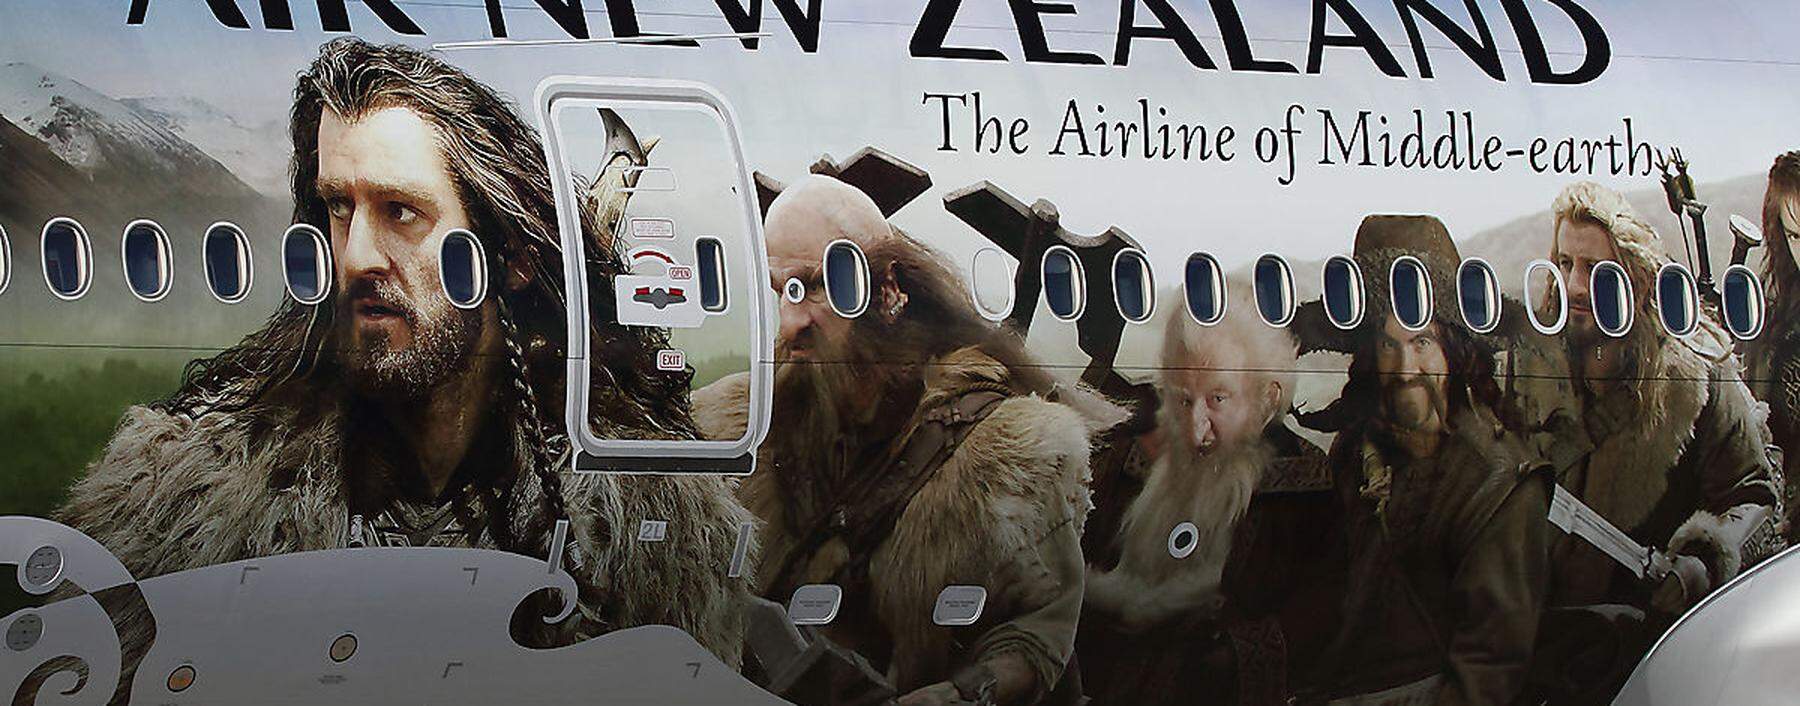 "Hobbit-Fluglinie" Air New Zealand